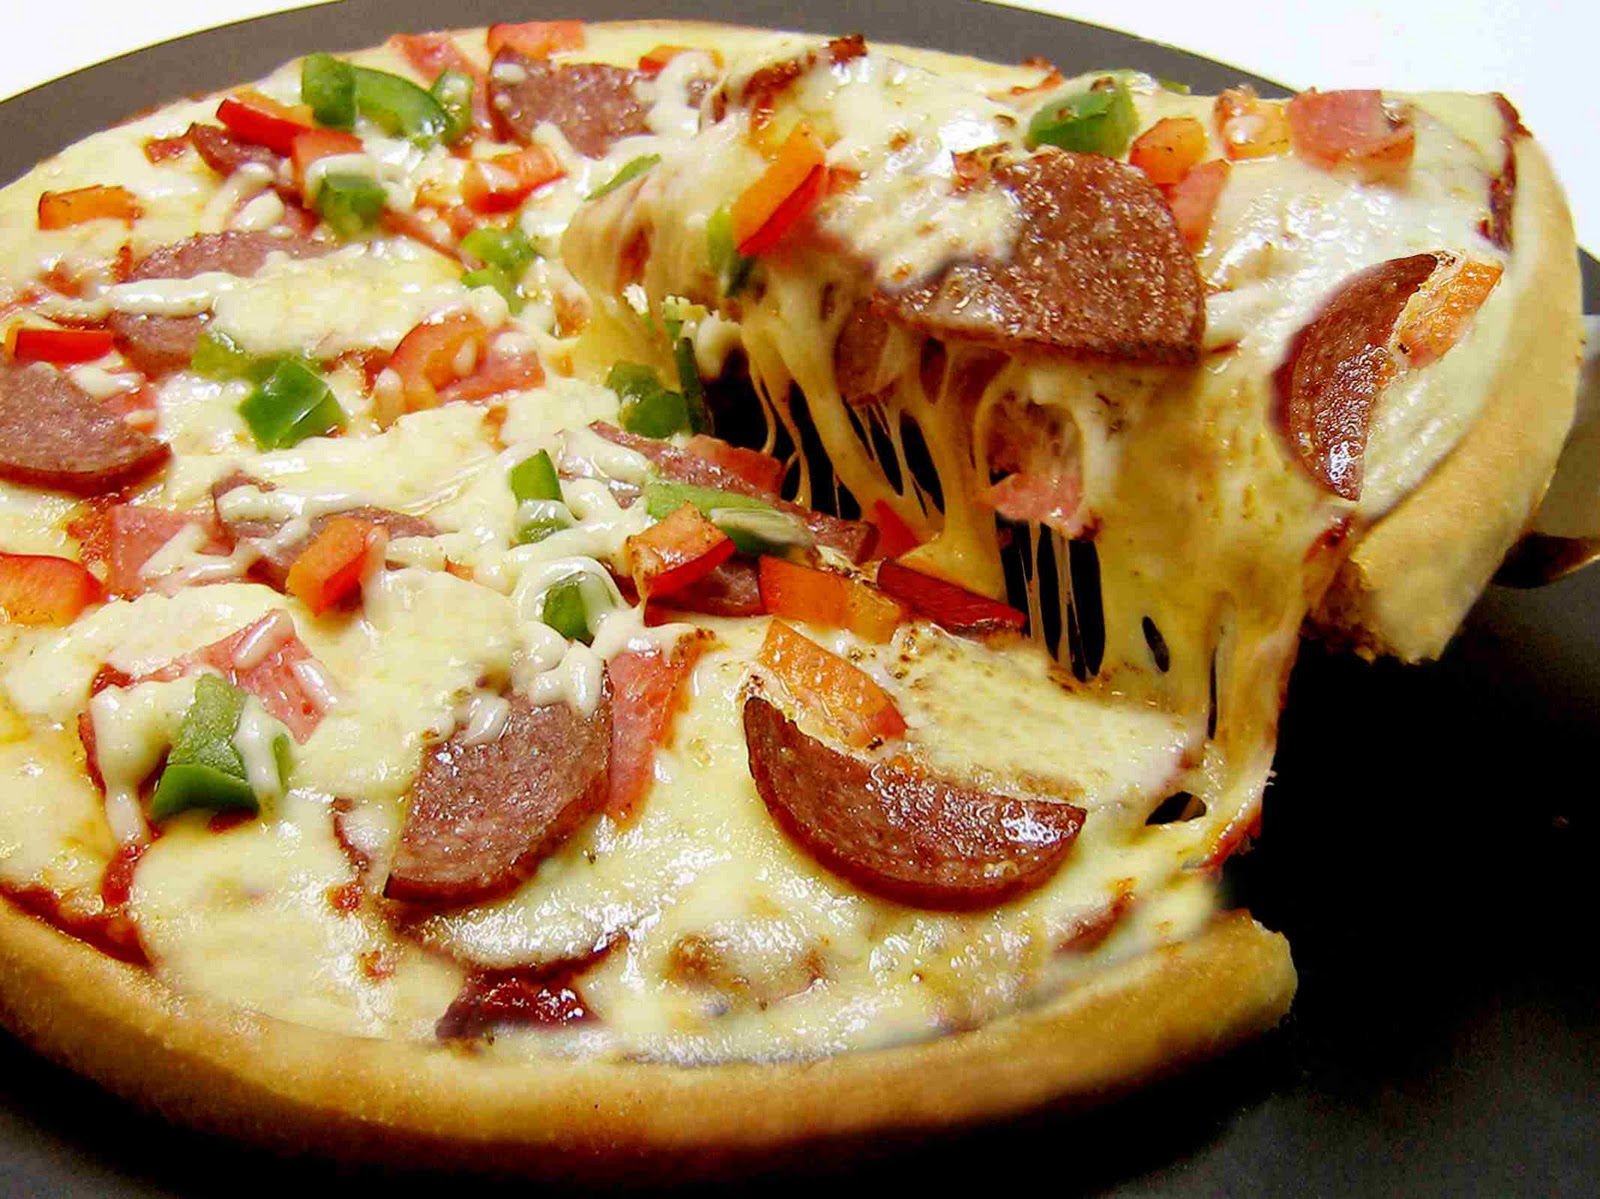 приготовление пиццы с колбасой сыром в духовке домашних условиях фото 115